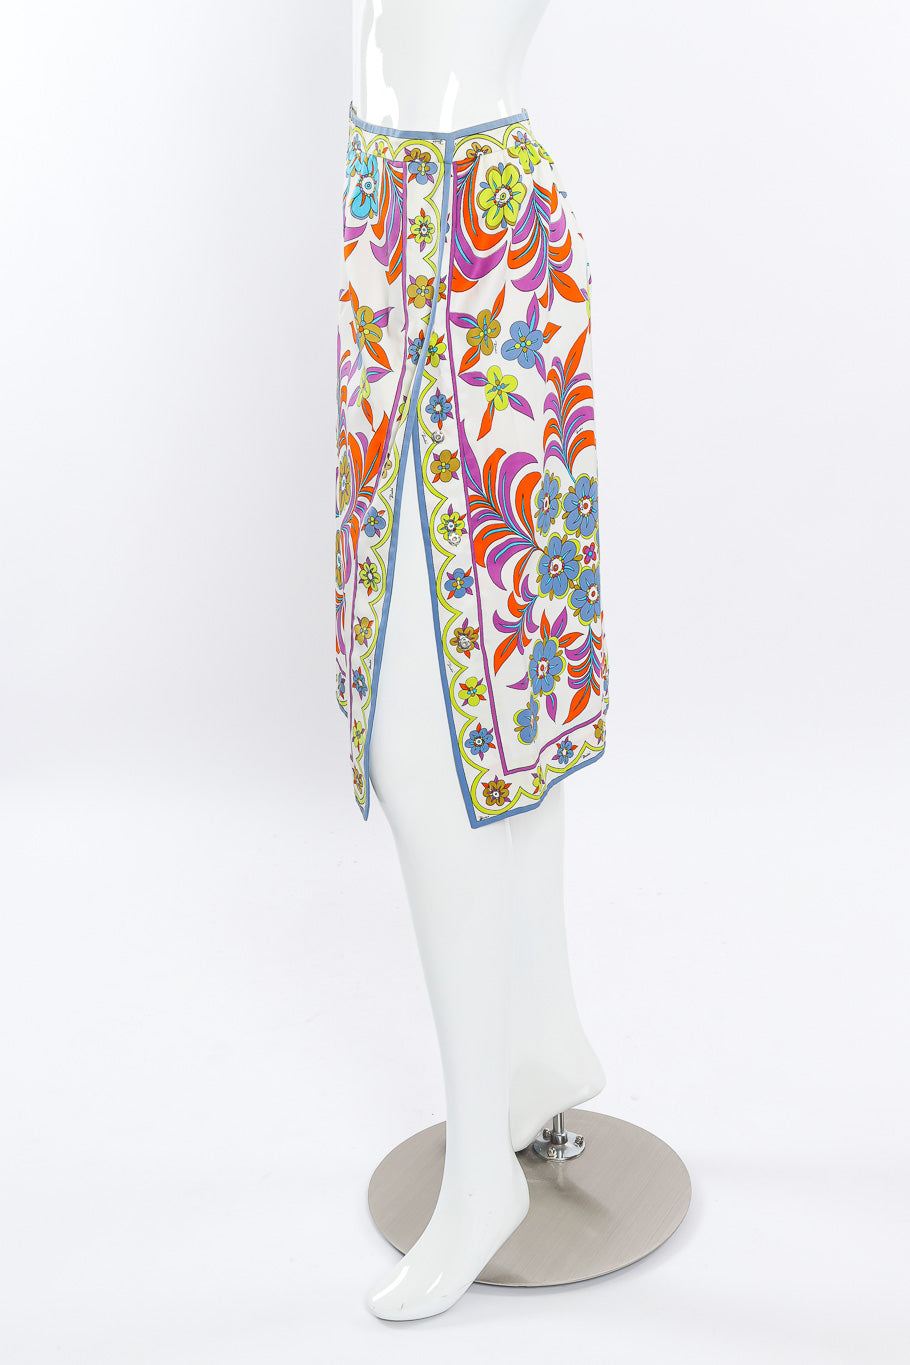 Vintage Emilio Pucci Buttercups A-line Skirt side view on mannequin @Recessla